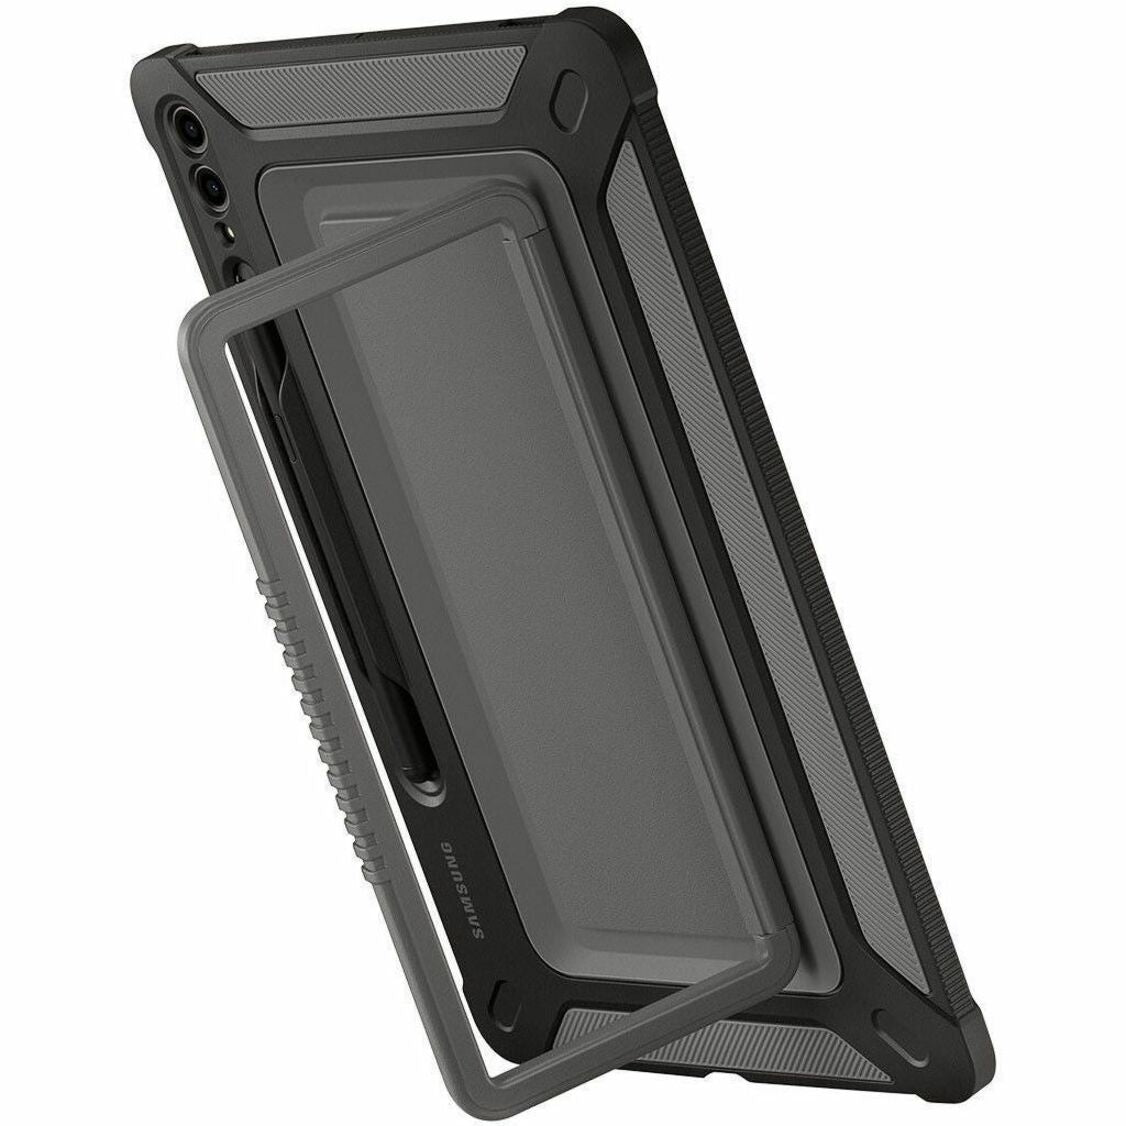 Marca: Samsung Fundas al aire libre ultrarresistentes para tablet y lápiz stylus Galaxy Tab S9 EF-RX910CBEGUJ